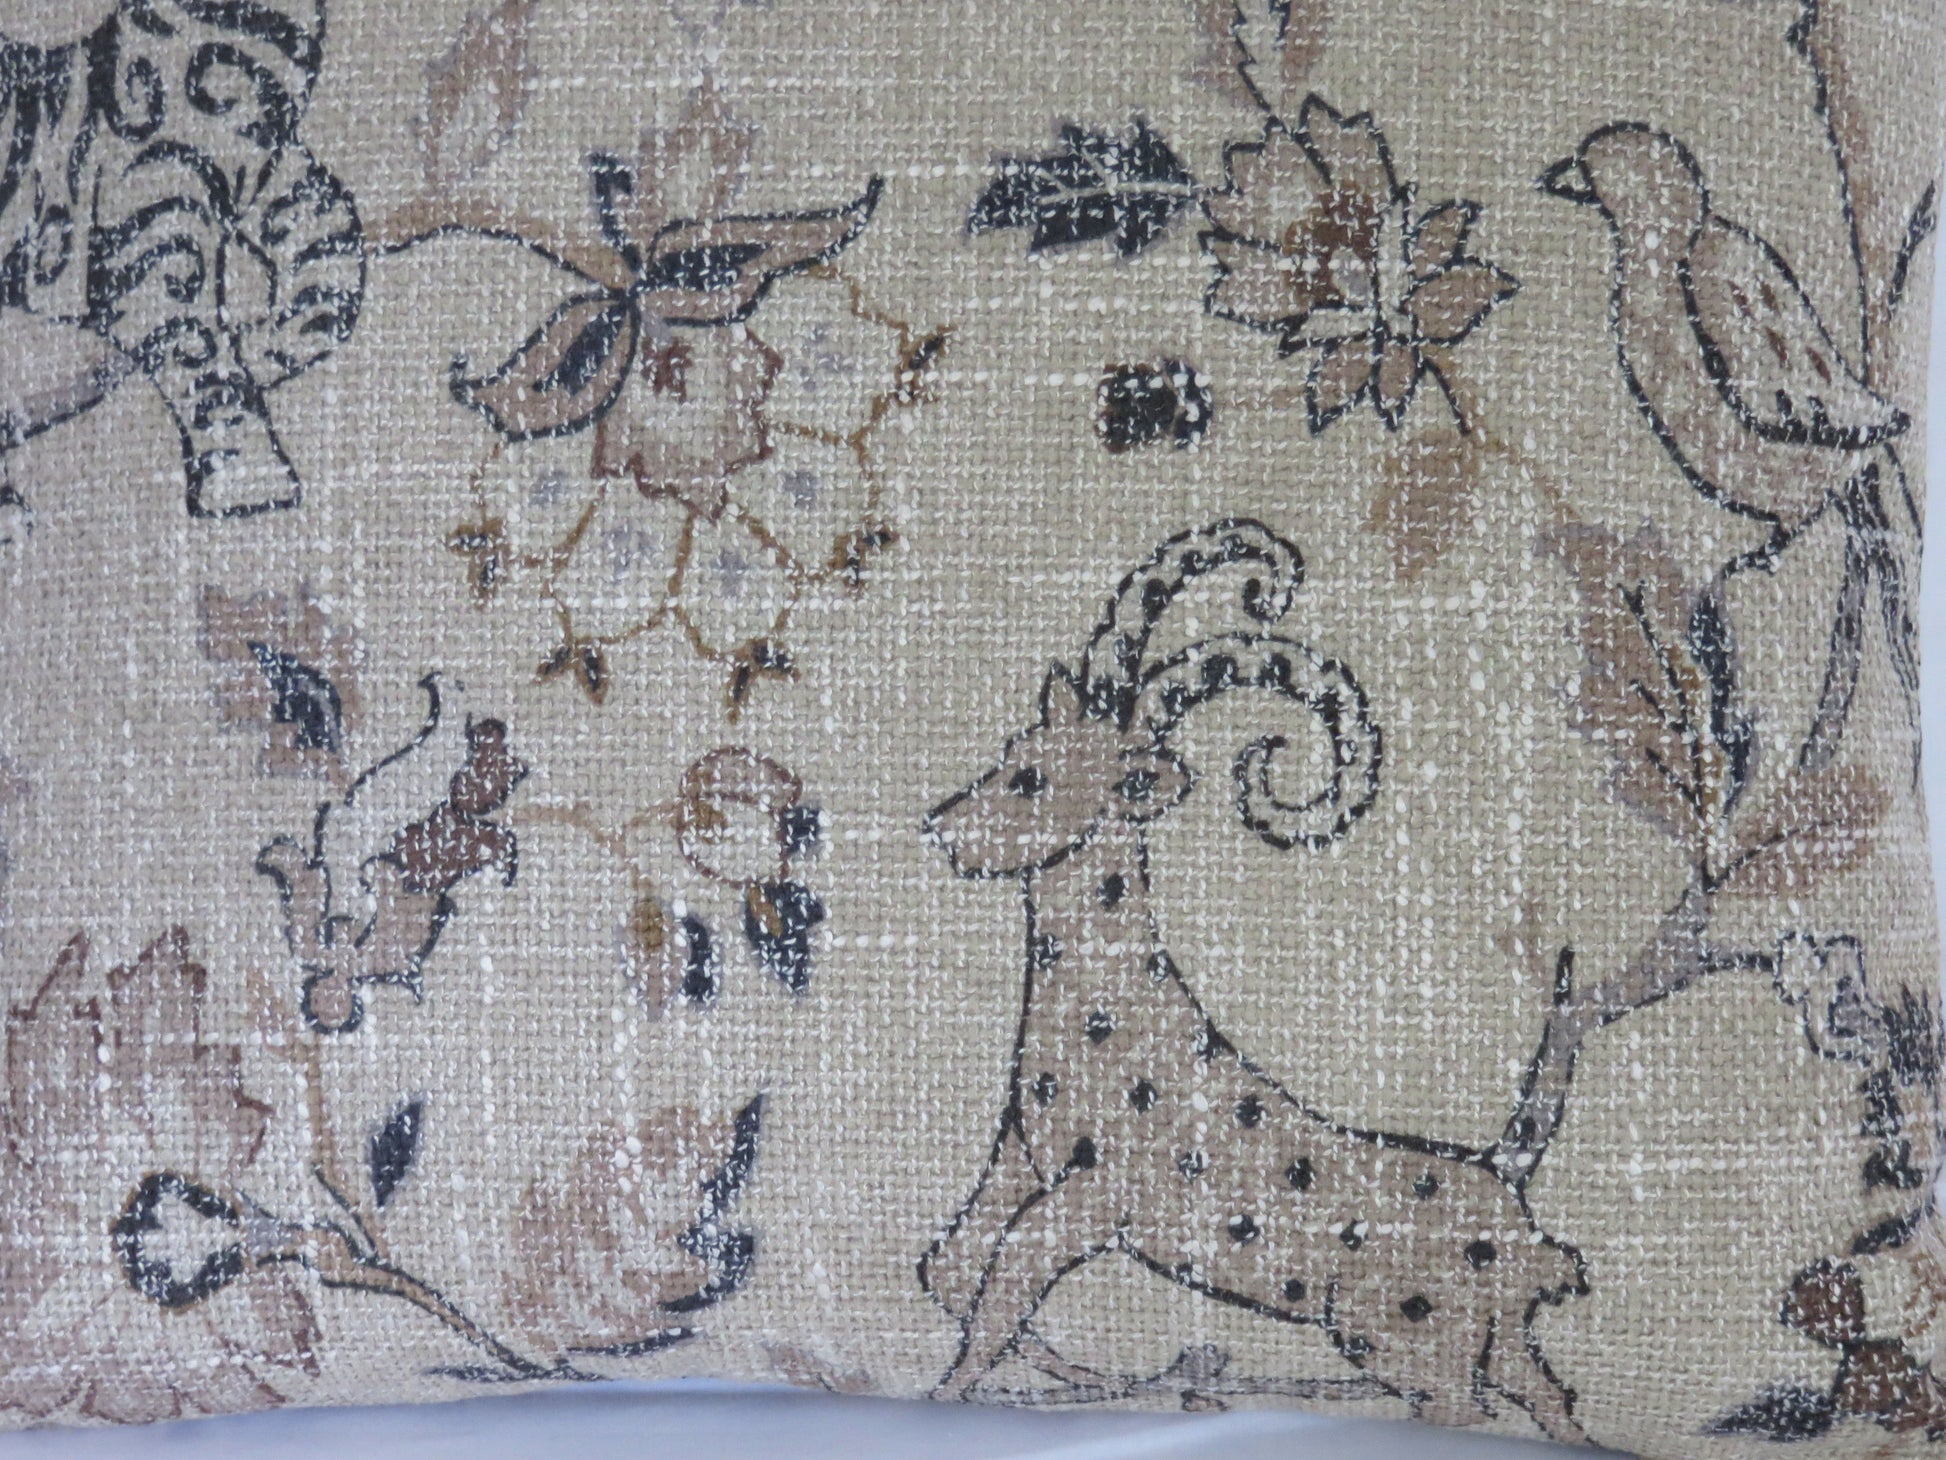 tan safari animal pillow cover with tigers, antelope, birds